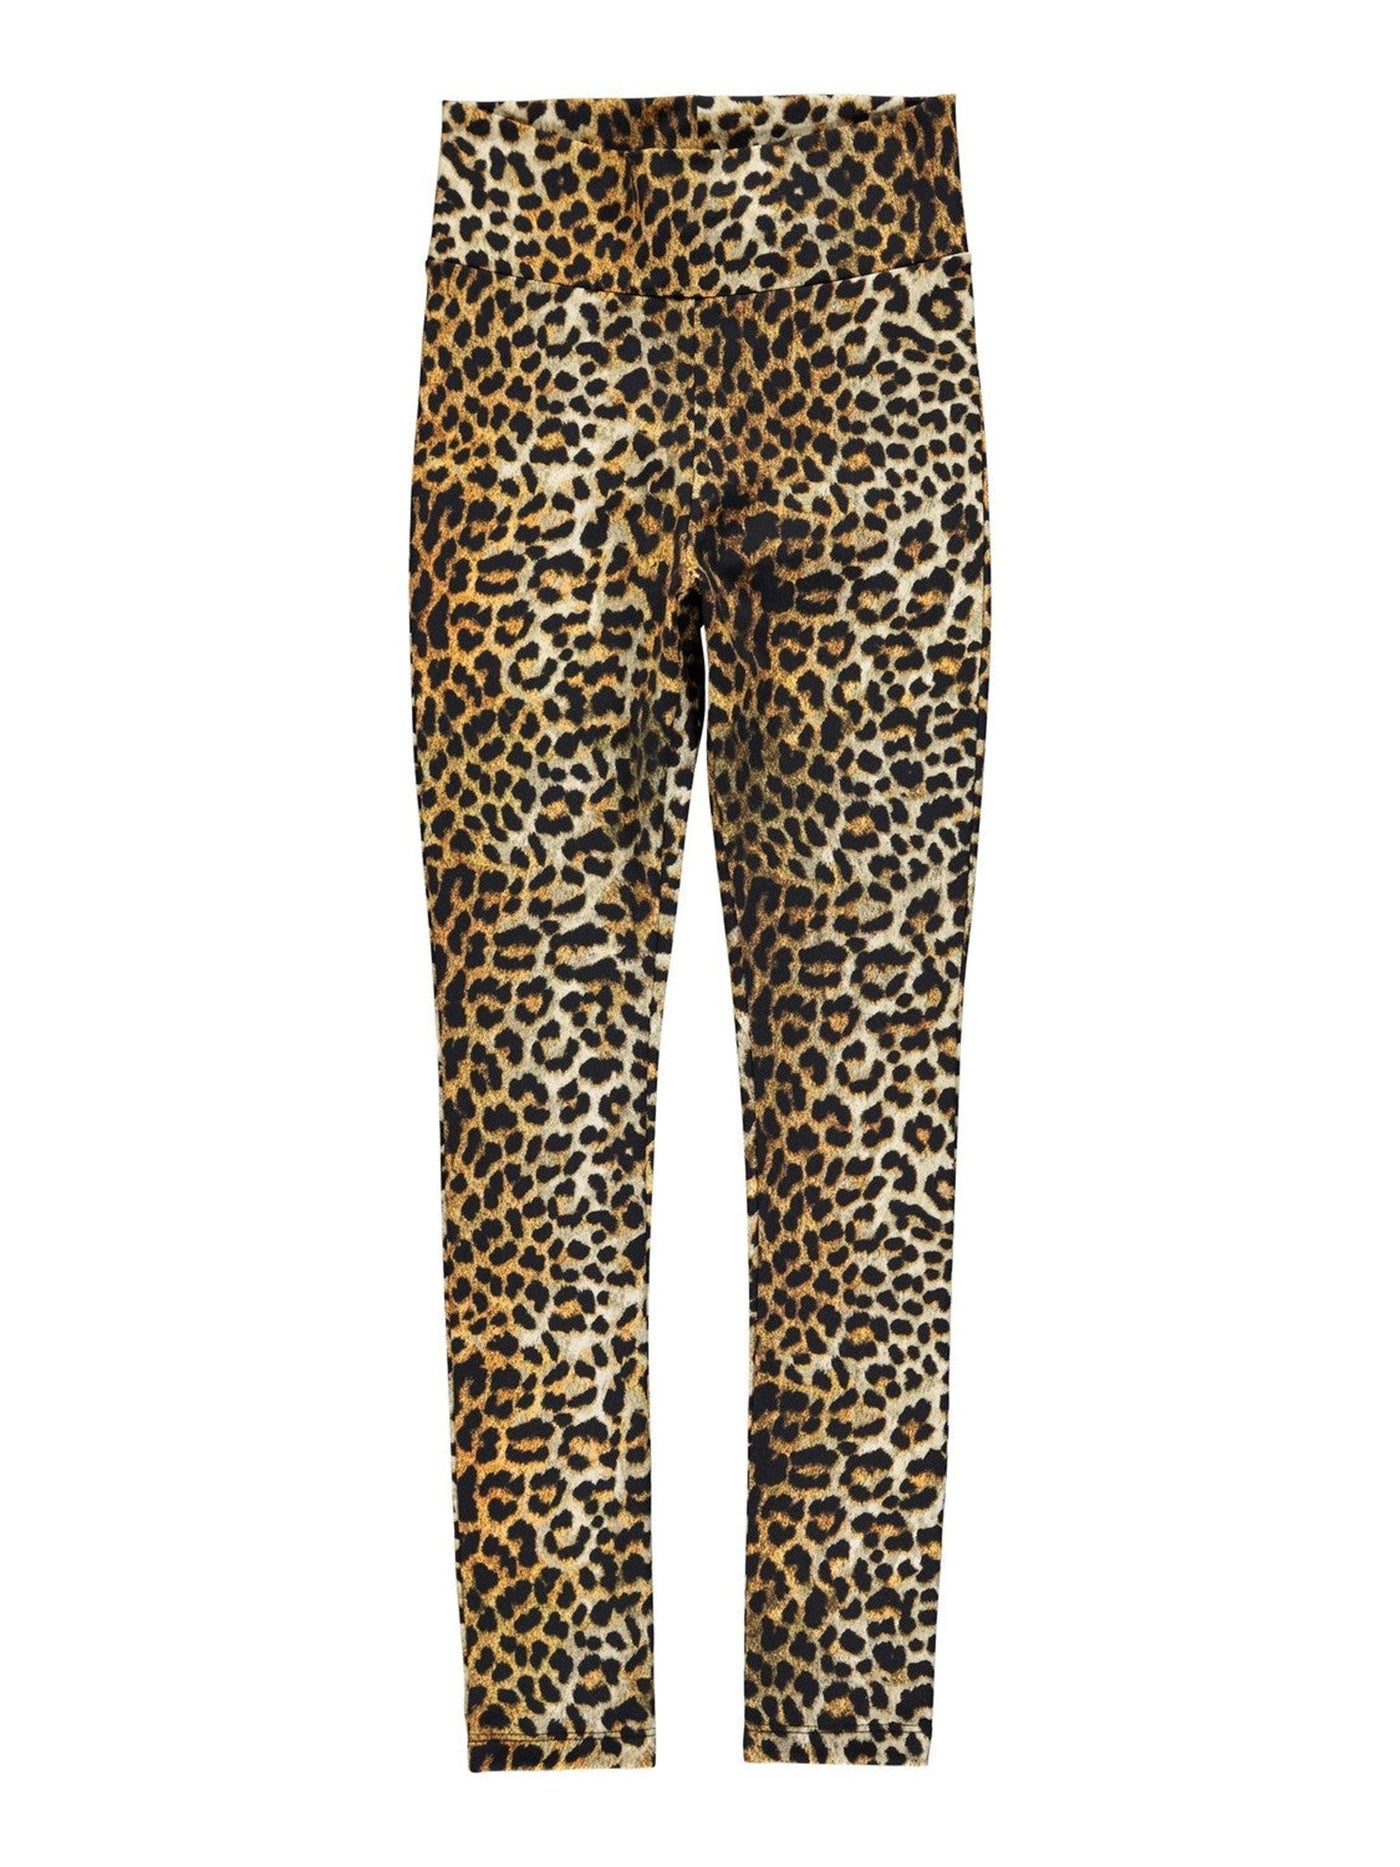 Mønstrede leggings - Leopard - Name It - Sort